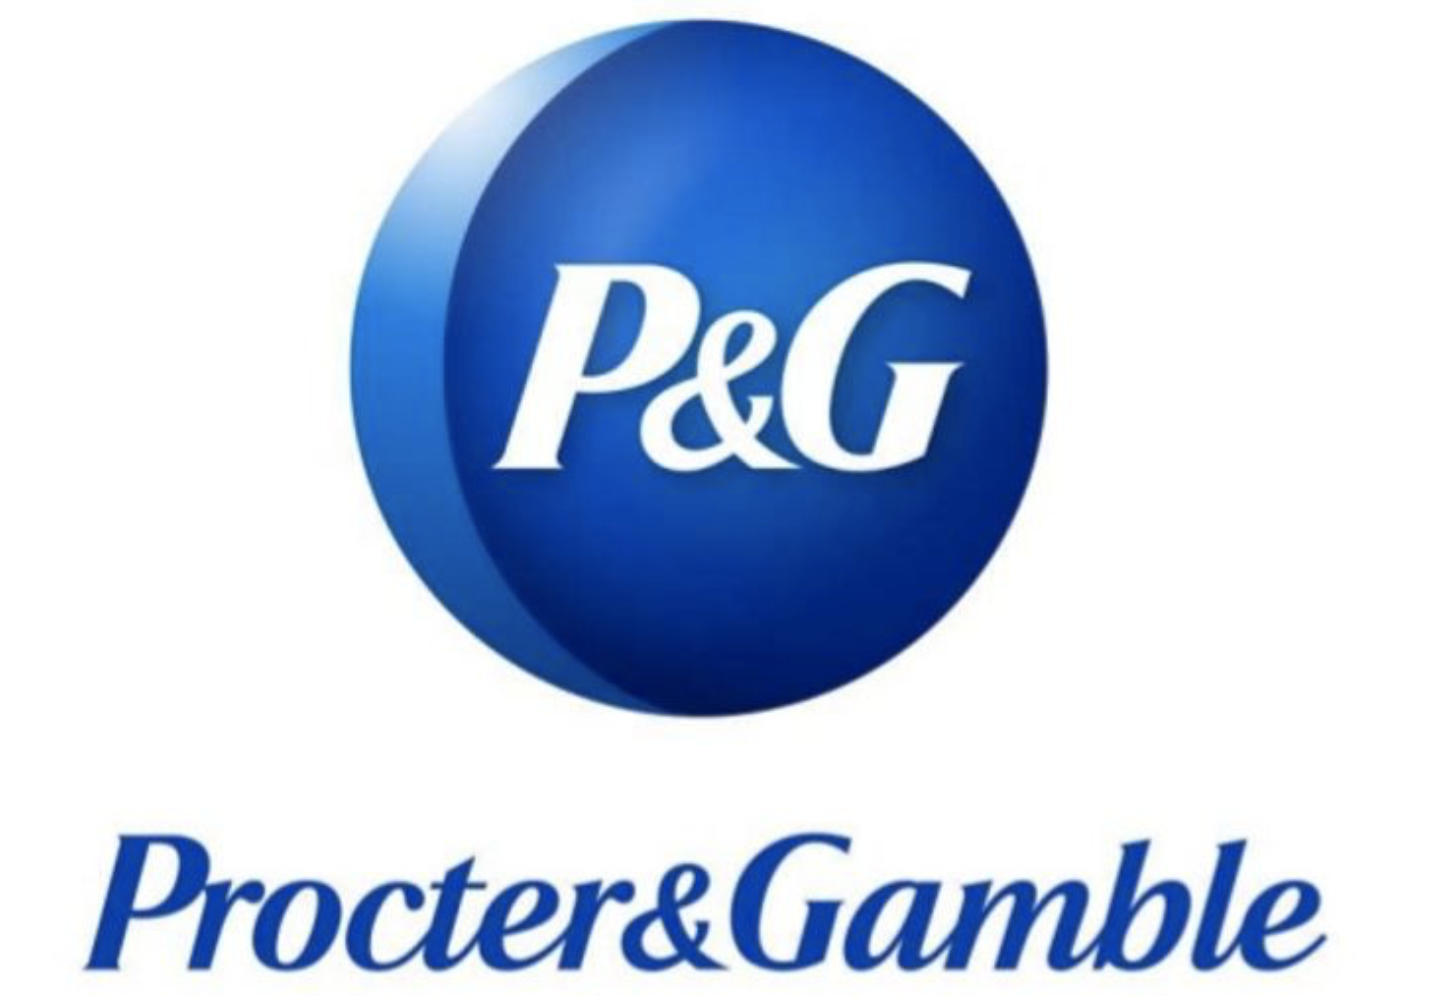 P&G株価